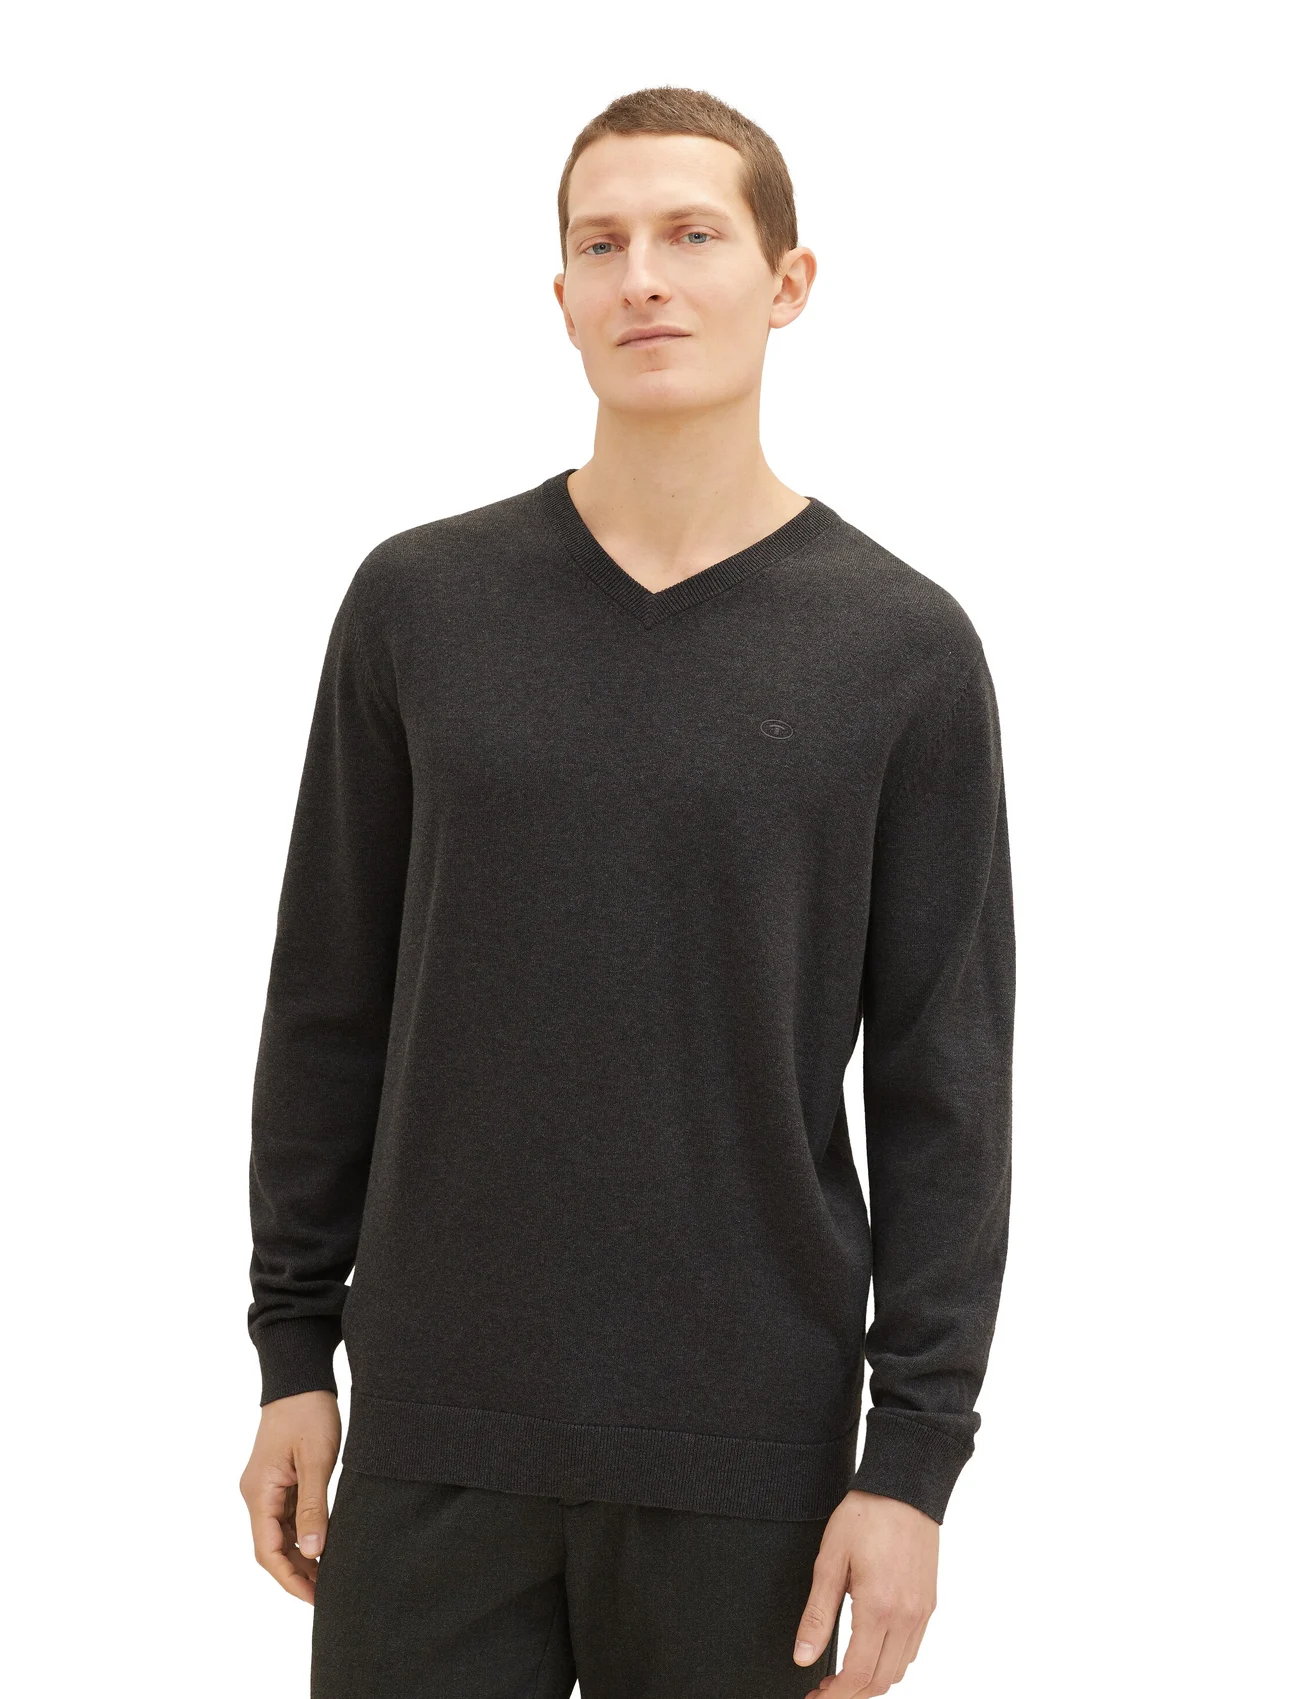 Tom Tailor - basic v-neck knit - lowest prices - black grey melange - 1